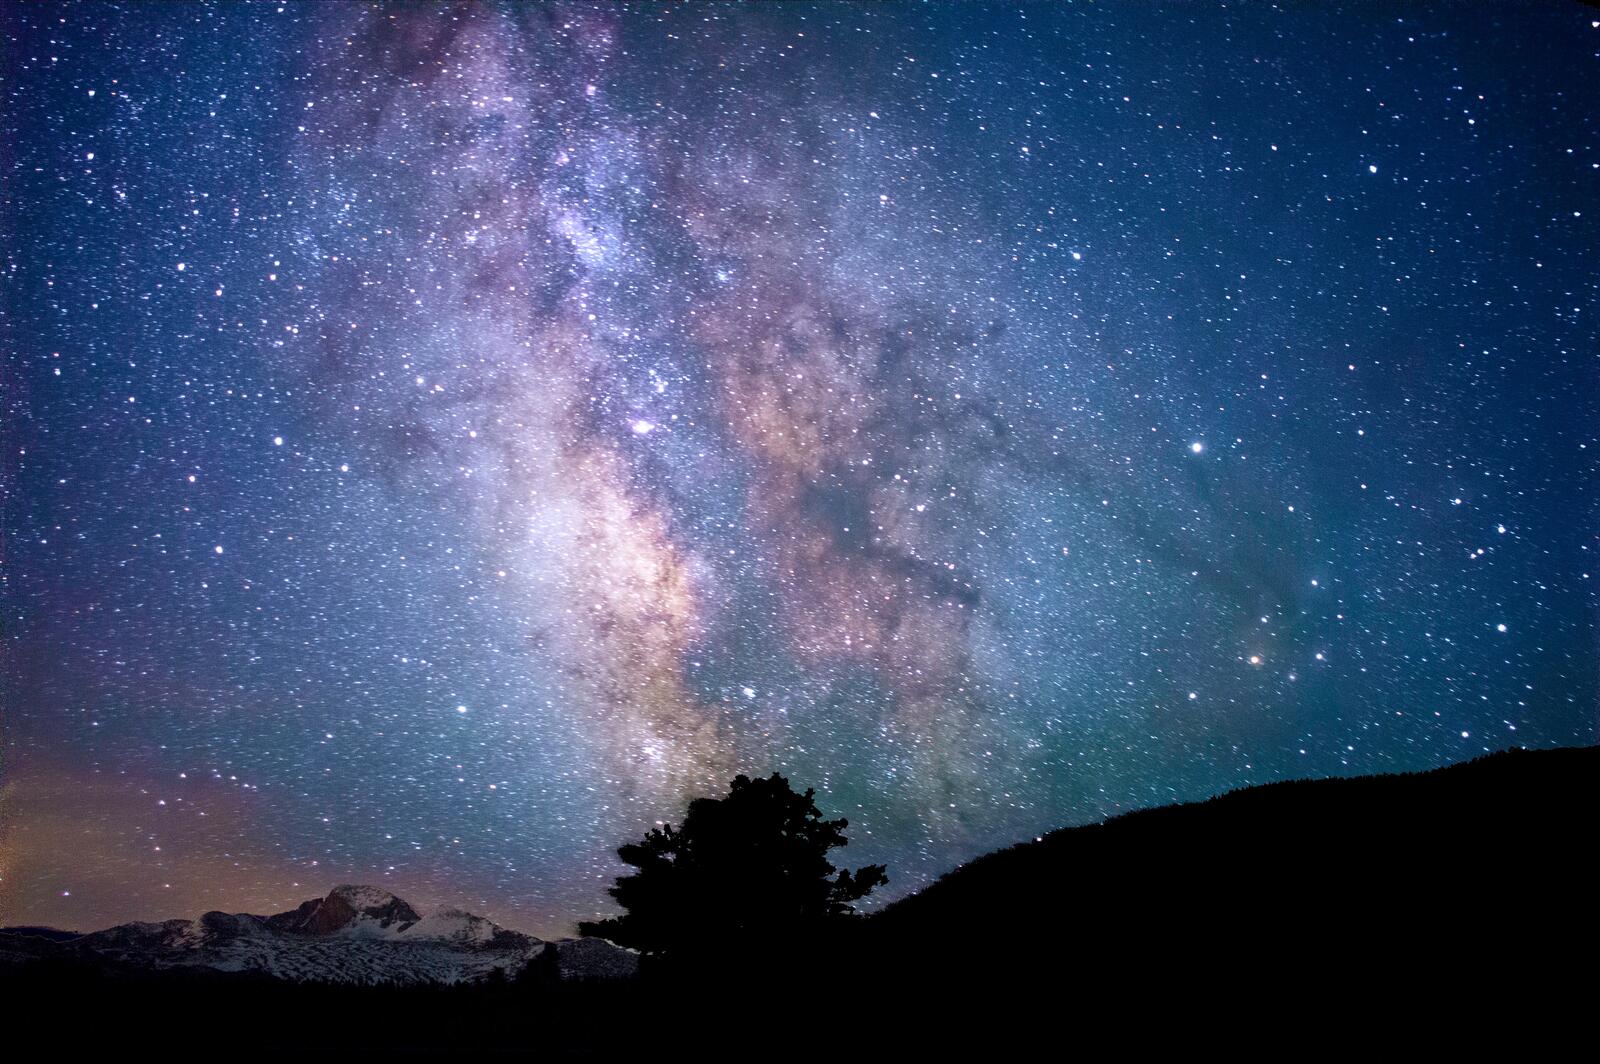 Бесплатное фото Звездное ночное небо с млечным путем